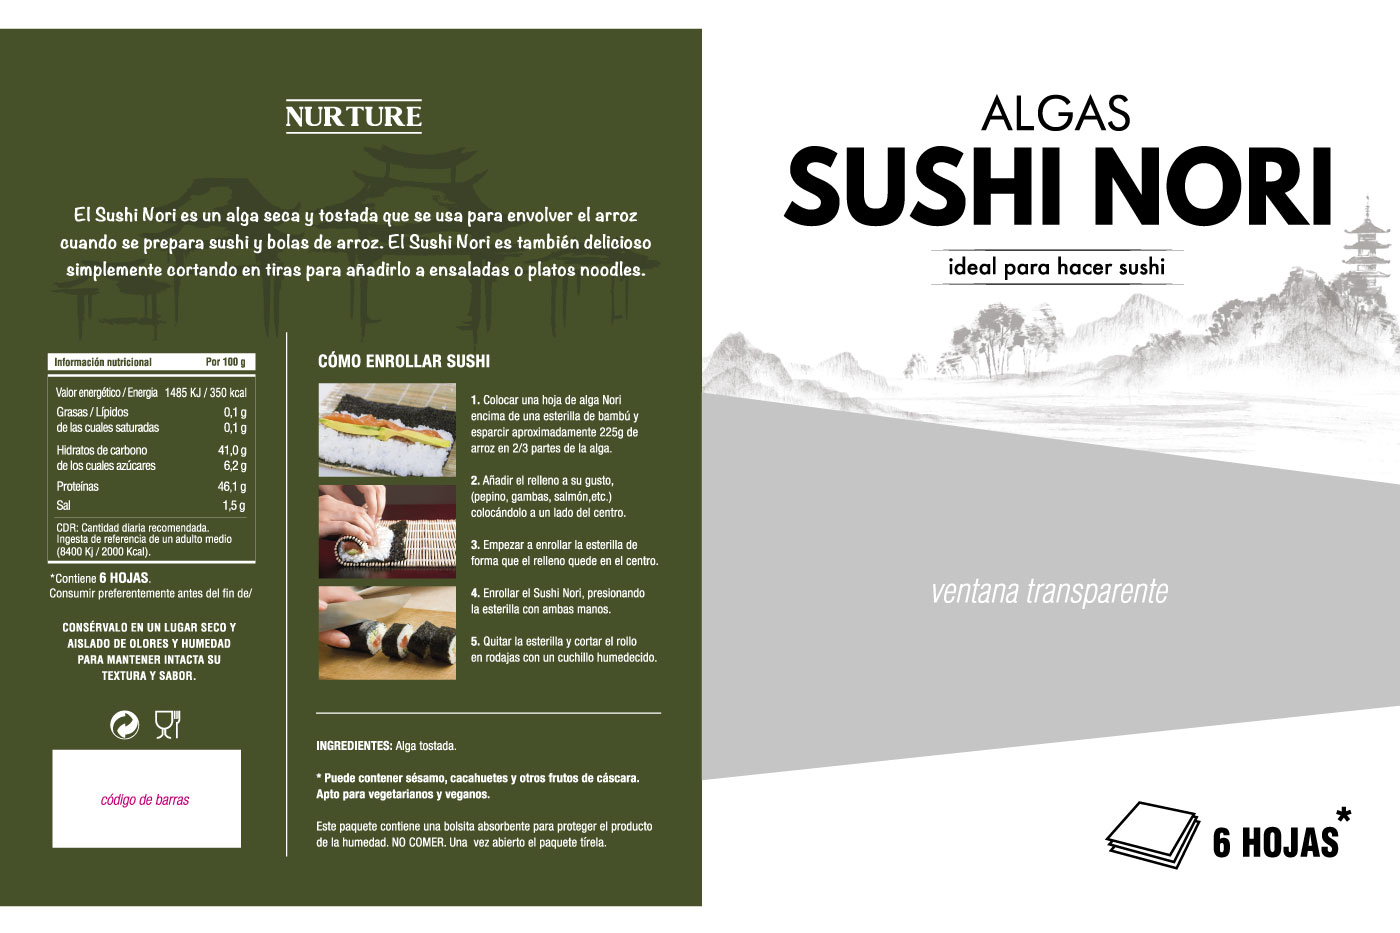 Algas Sushi Nori